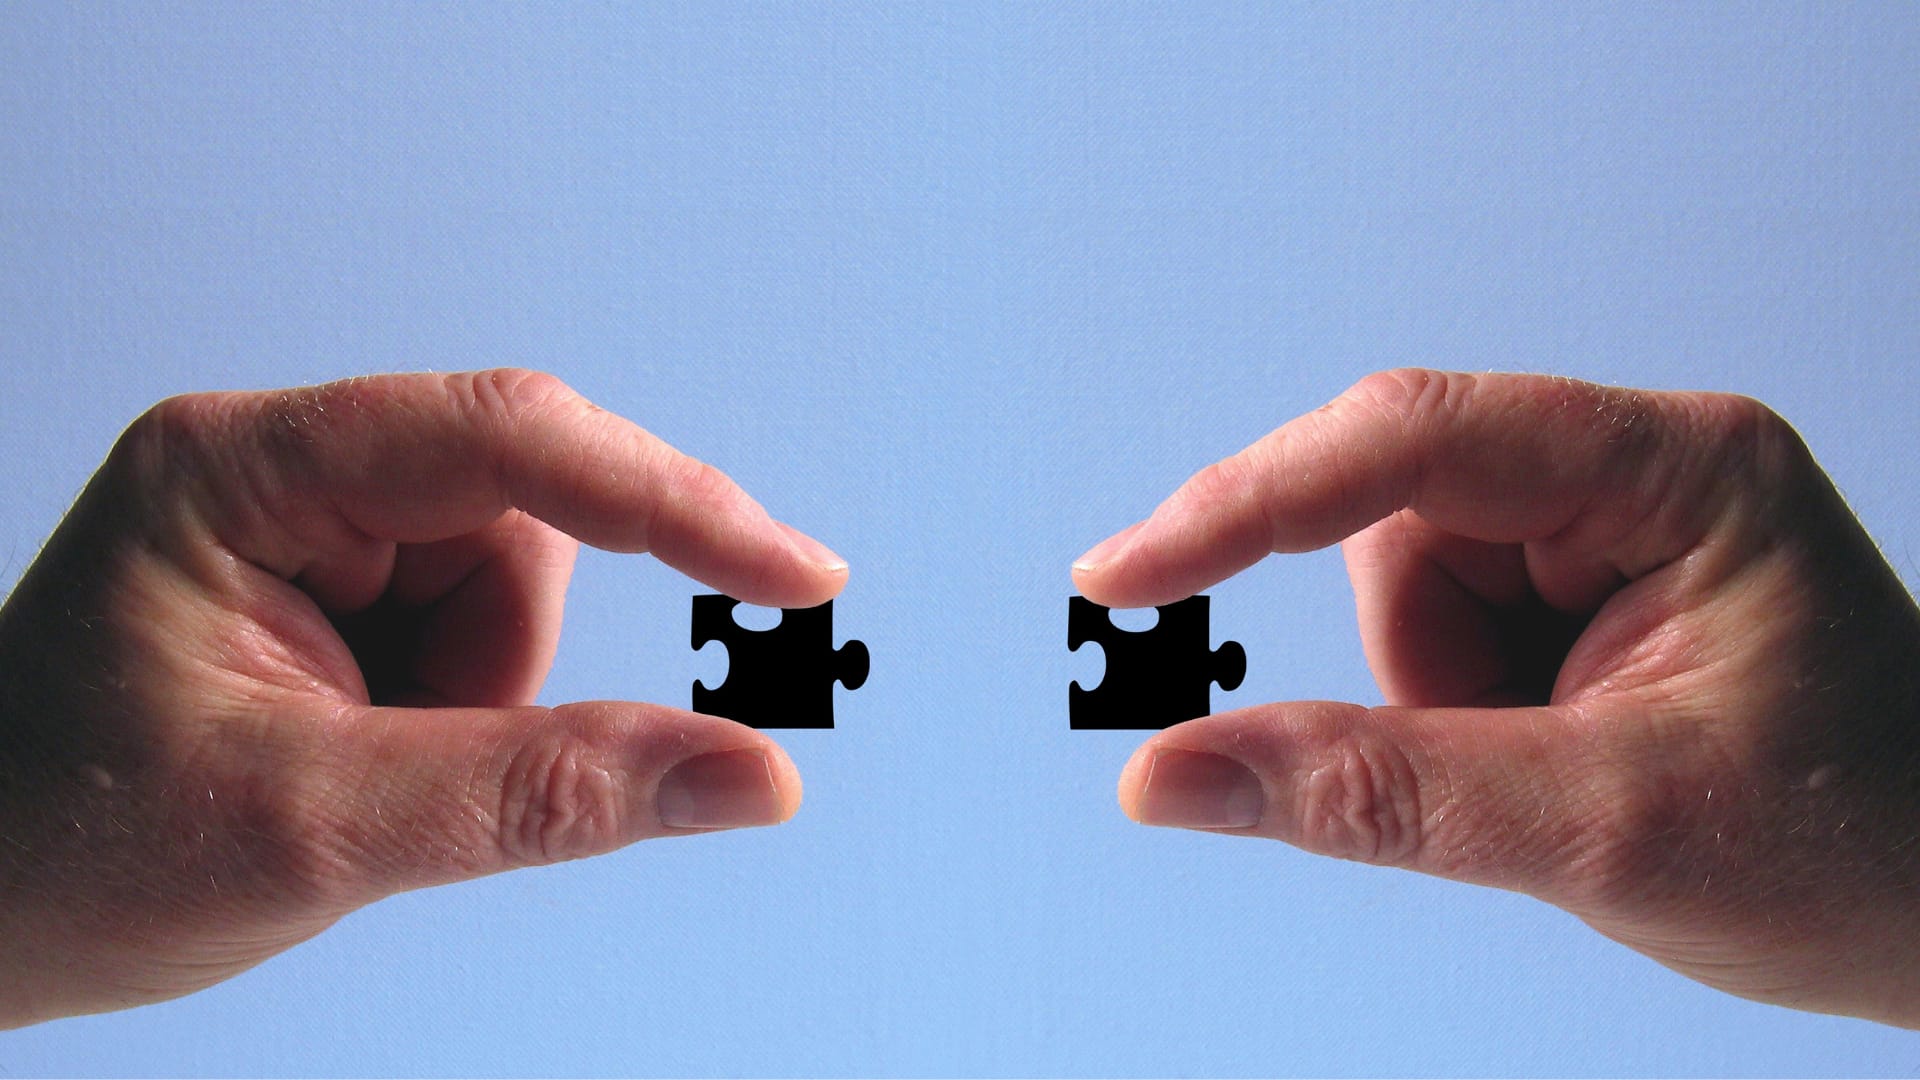 Duas mãos segurando peças iguais de quebra-cabeça